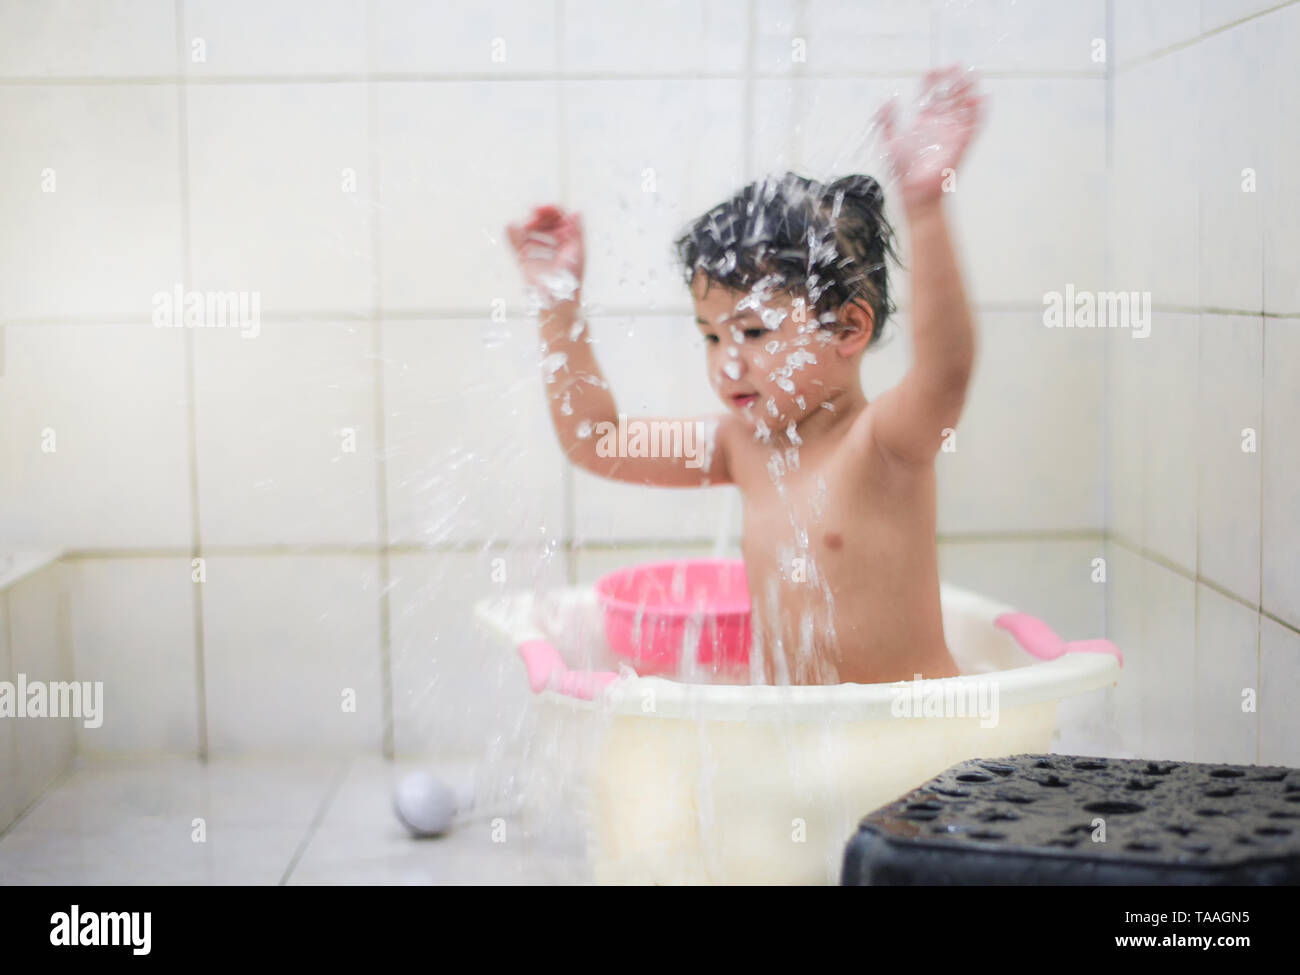 Kinder Dusche Bad/Asien kid Mädchen in der Badewanne spielen - kleines Mädc...